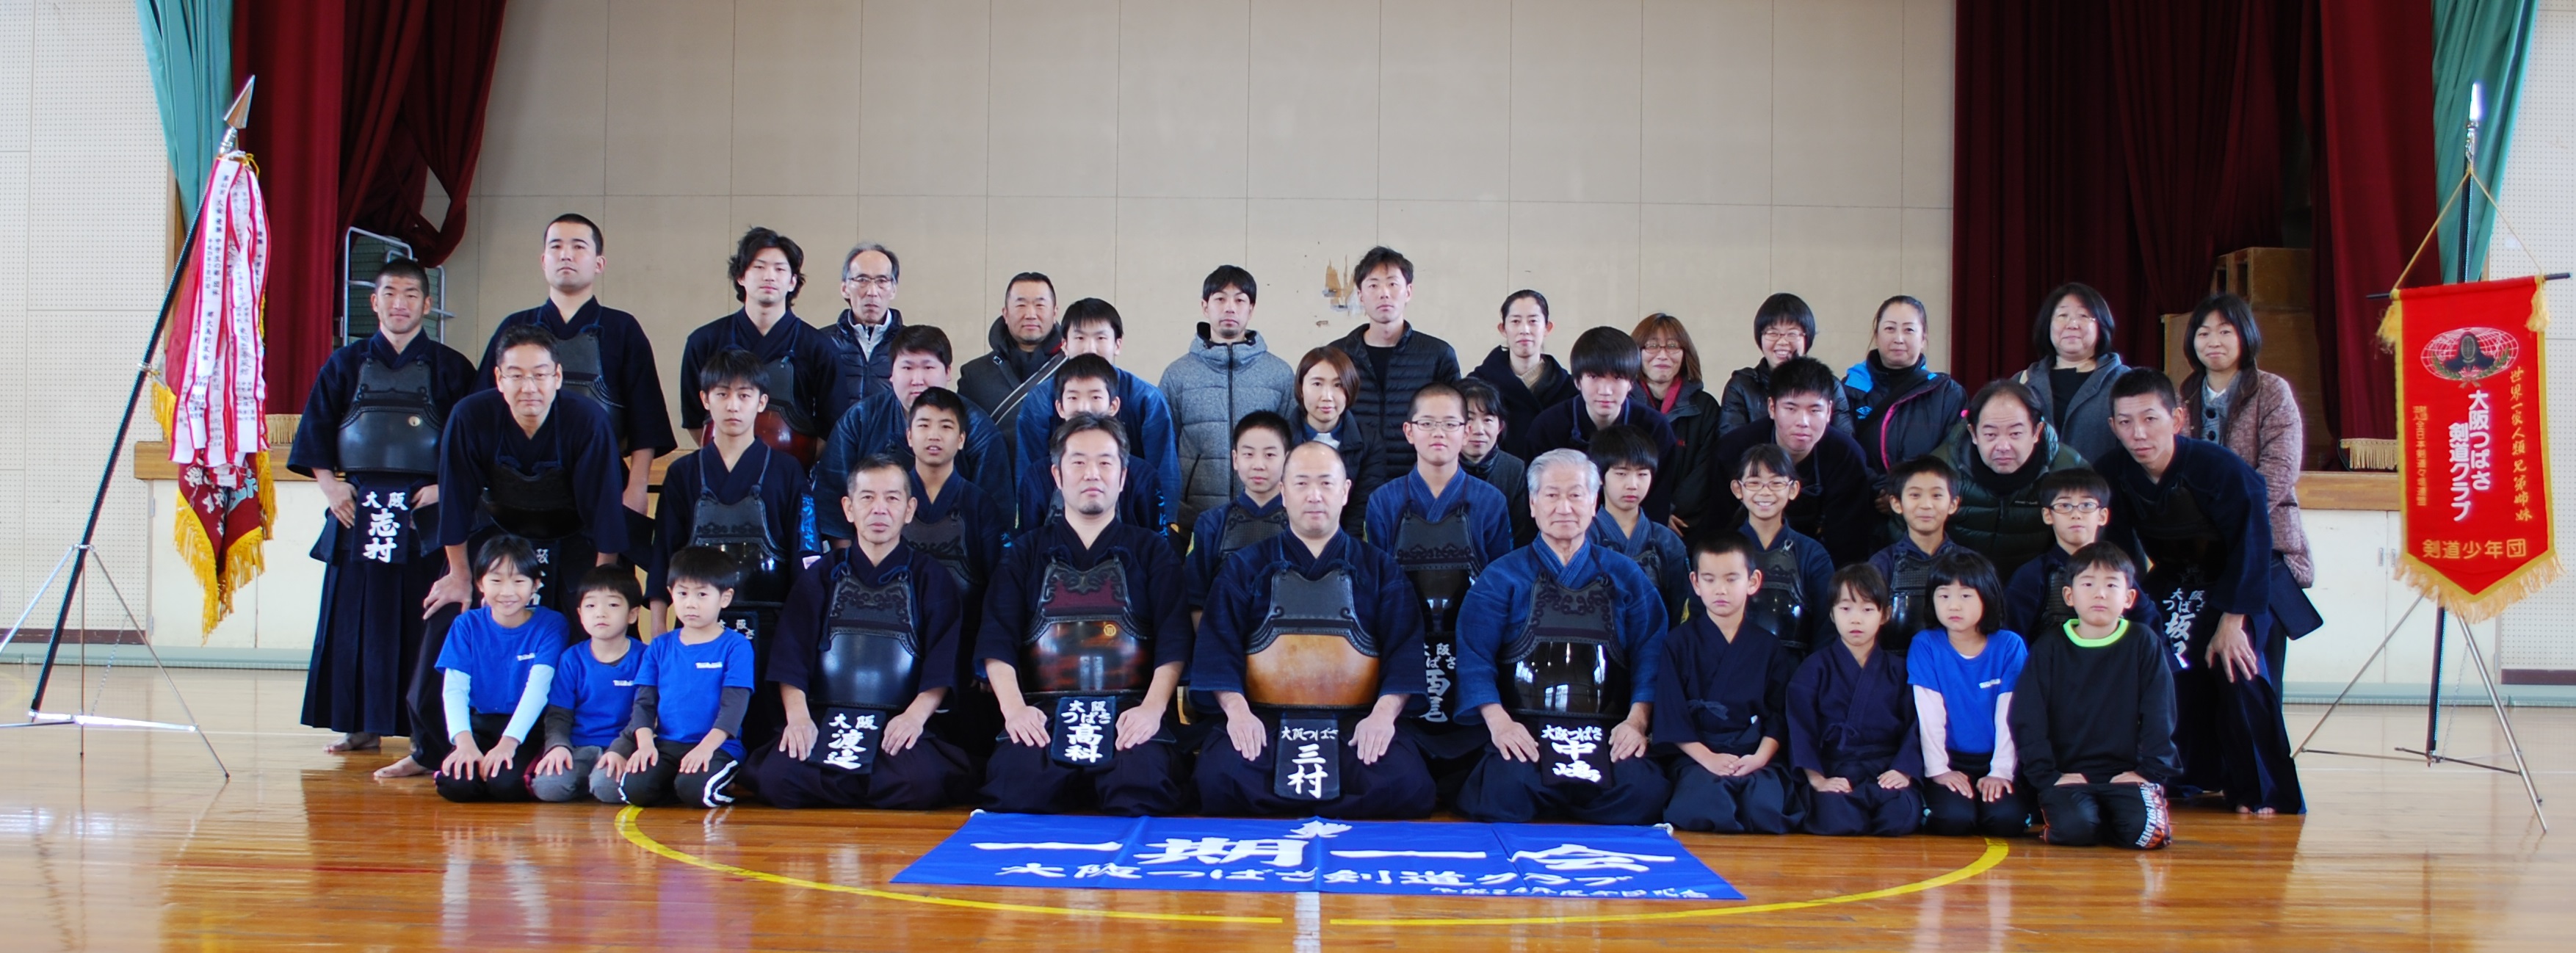 大阪つばさ剣道クラブ 大阪府堺市中区 南区で活動している少年剣道クラブです